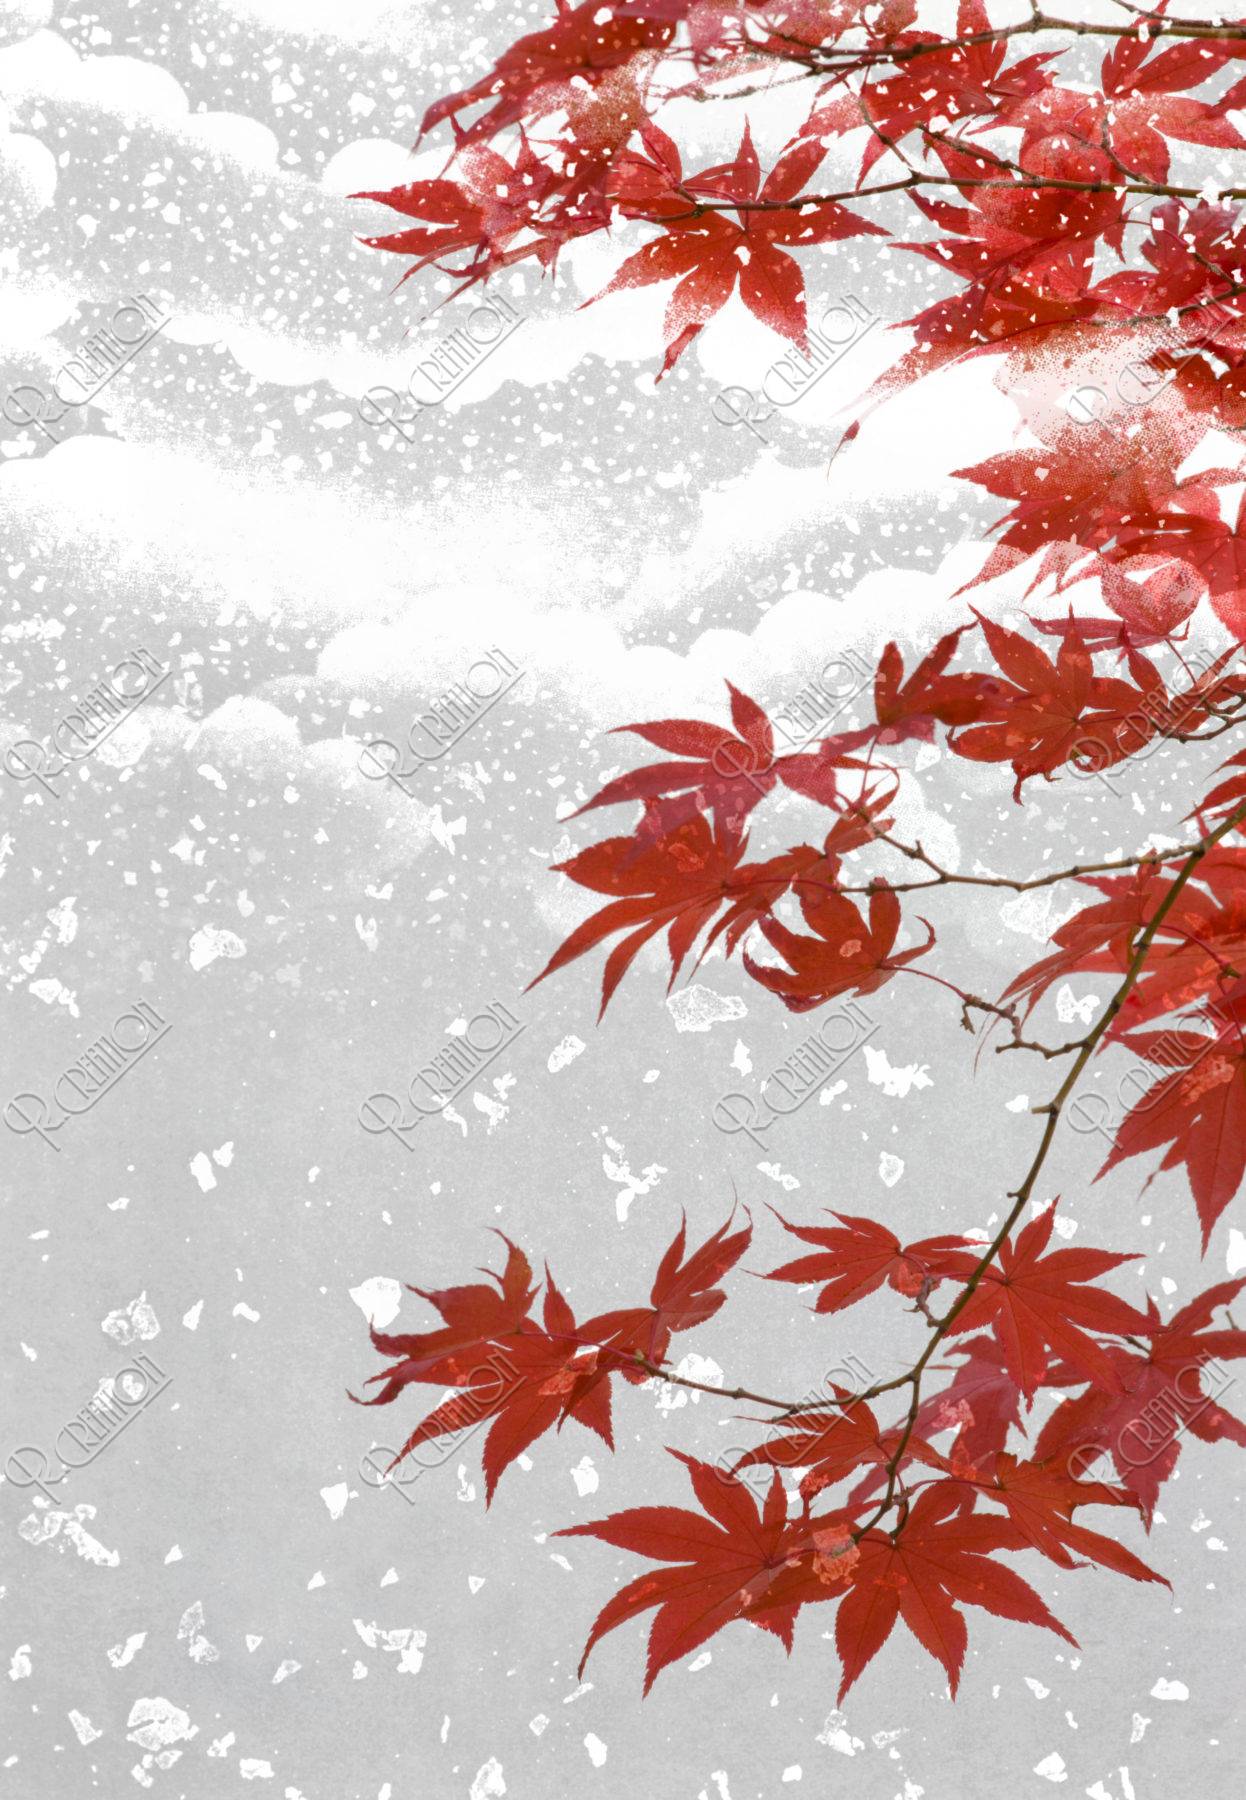 紅葉にかかる雪 背景イメージ CG